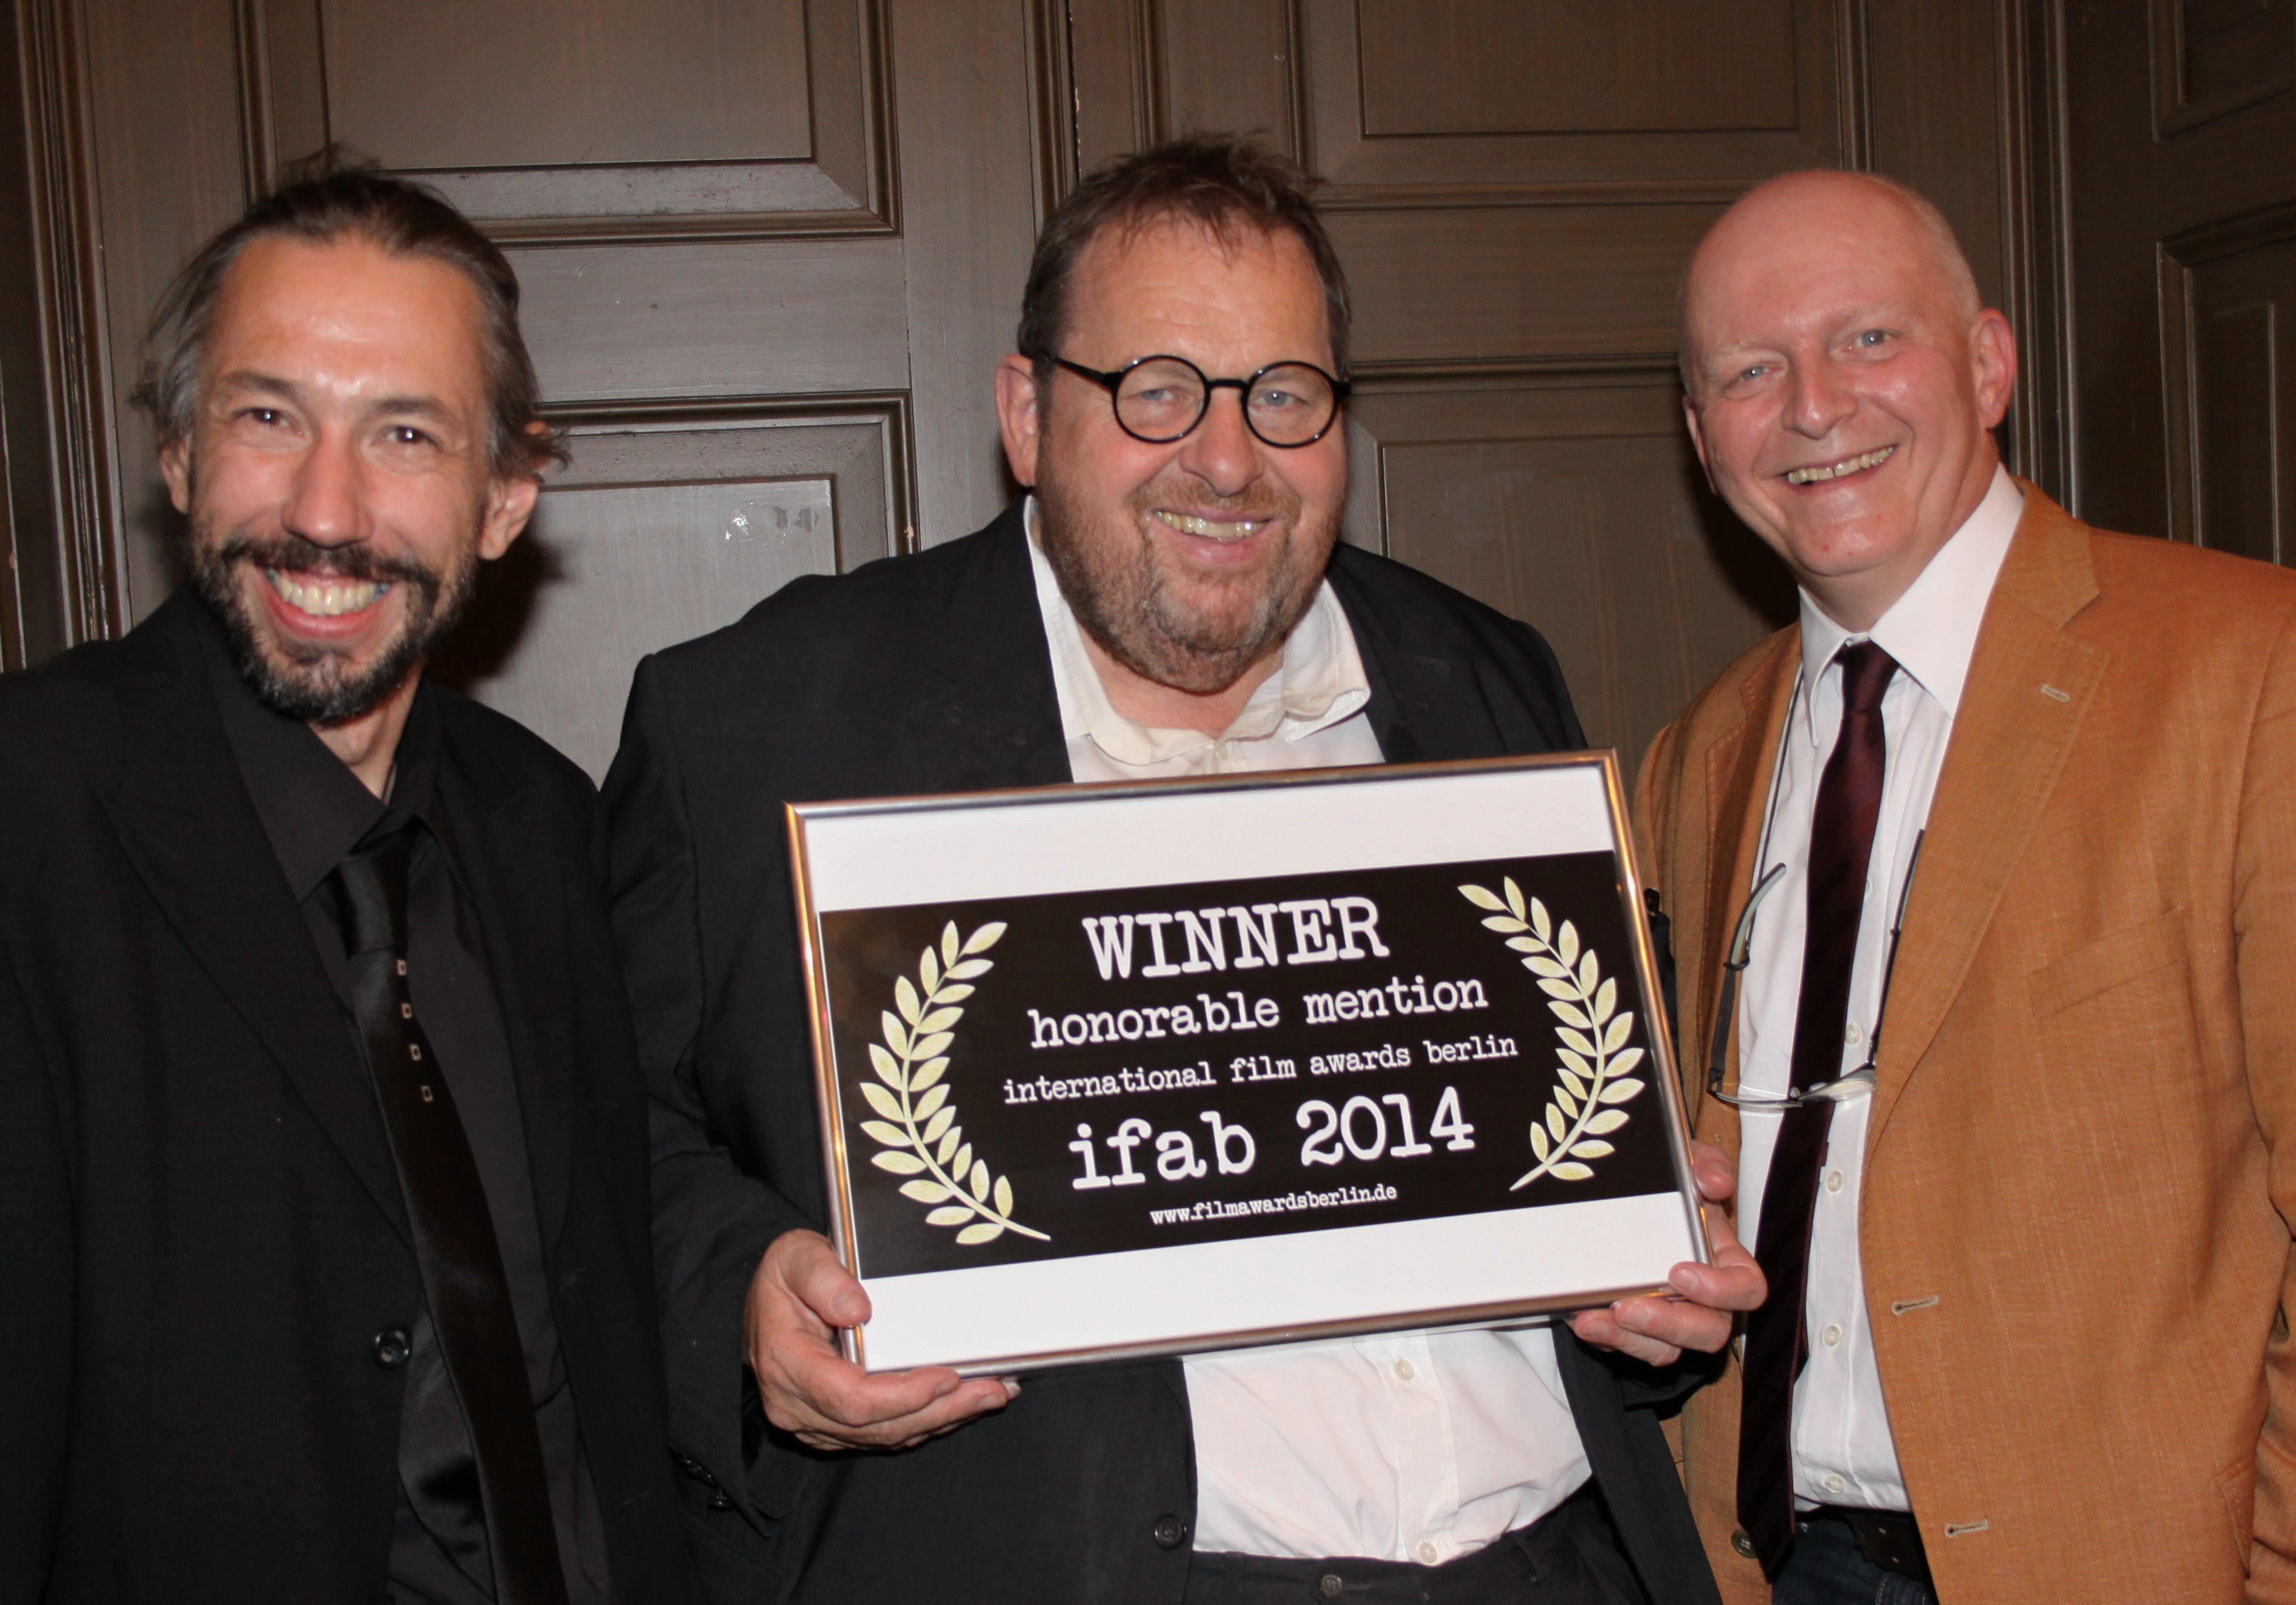 Übereichung des „Honorable Mention Award 2014“ an Peter Mair, Ottfried Fischer und Hermann Weiskopf. Foto: AVG Filmproduktion, Kirsten Ossoinig